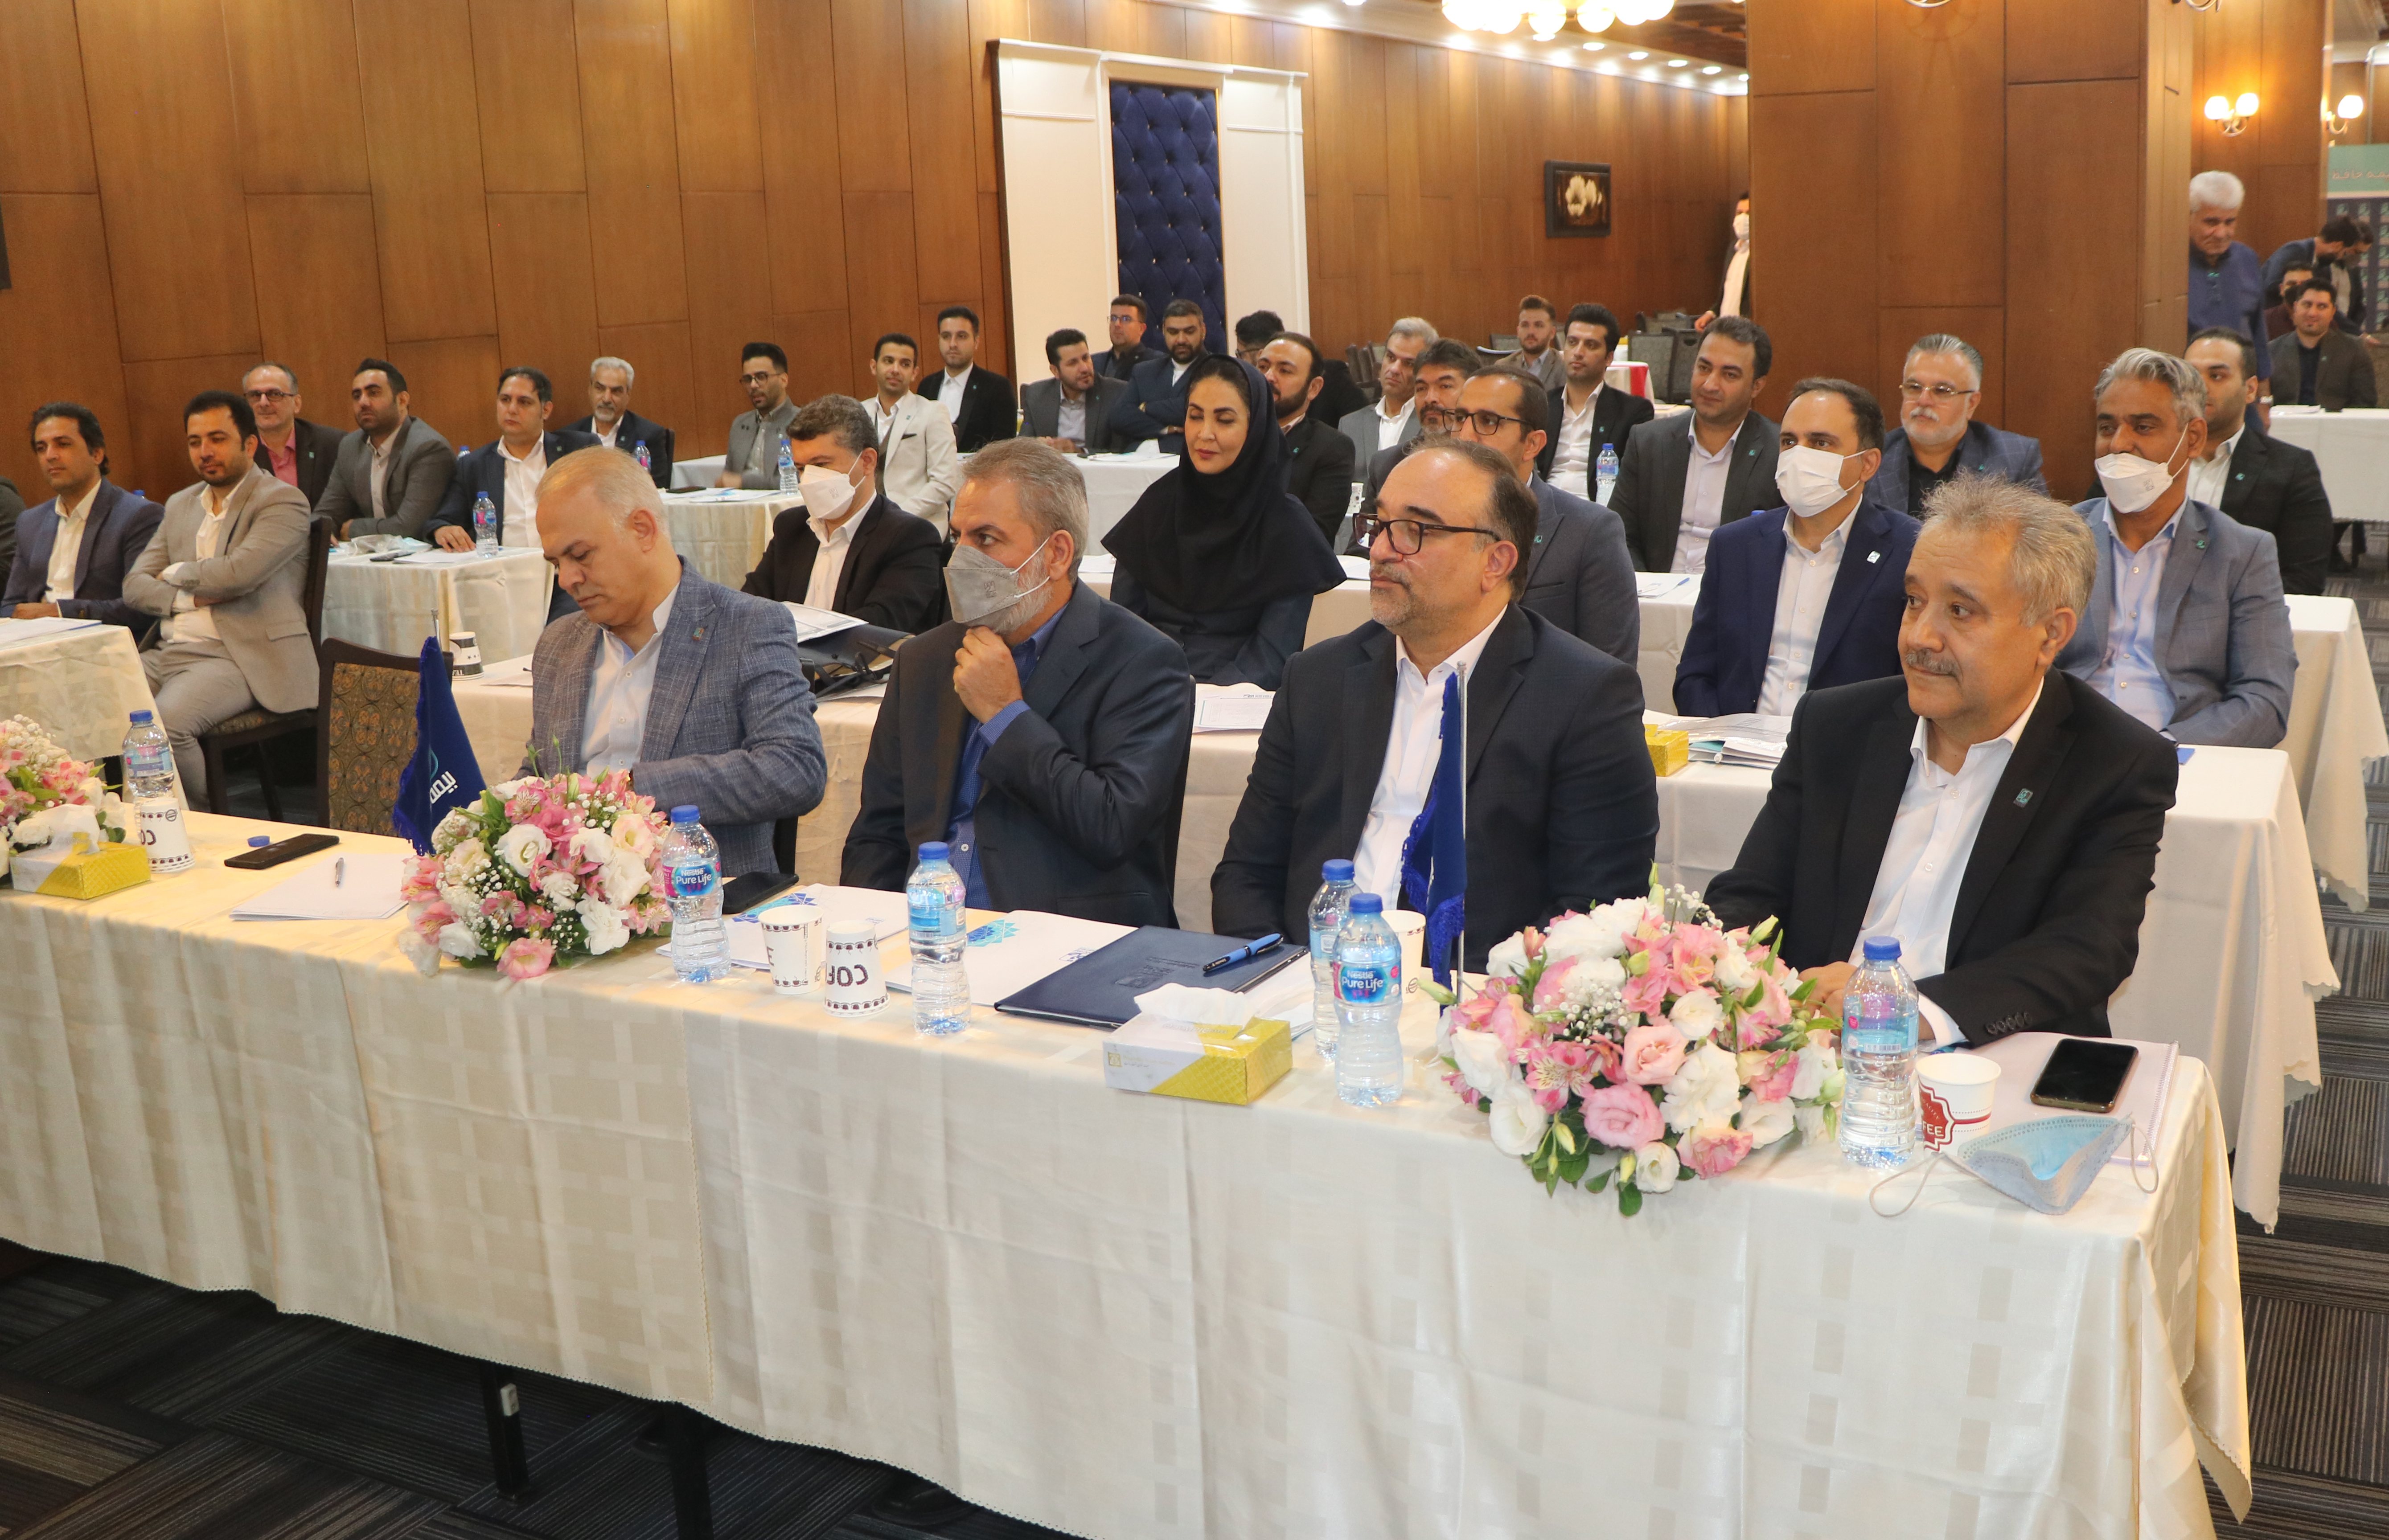 همایش سالگرد تاسیس شرکت بیمه حافظ با حضور رئیس هیئت مدیره، مدیرعامل، معاونان و مدیران شعب سراسر کشور برگزار شد.